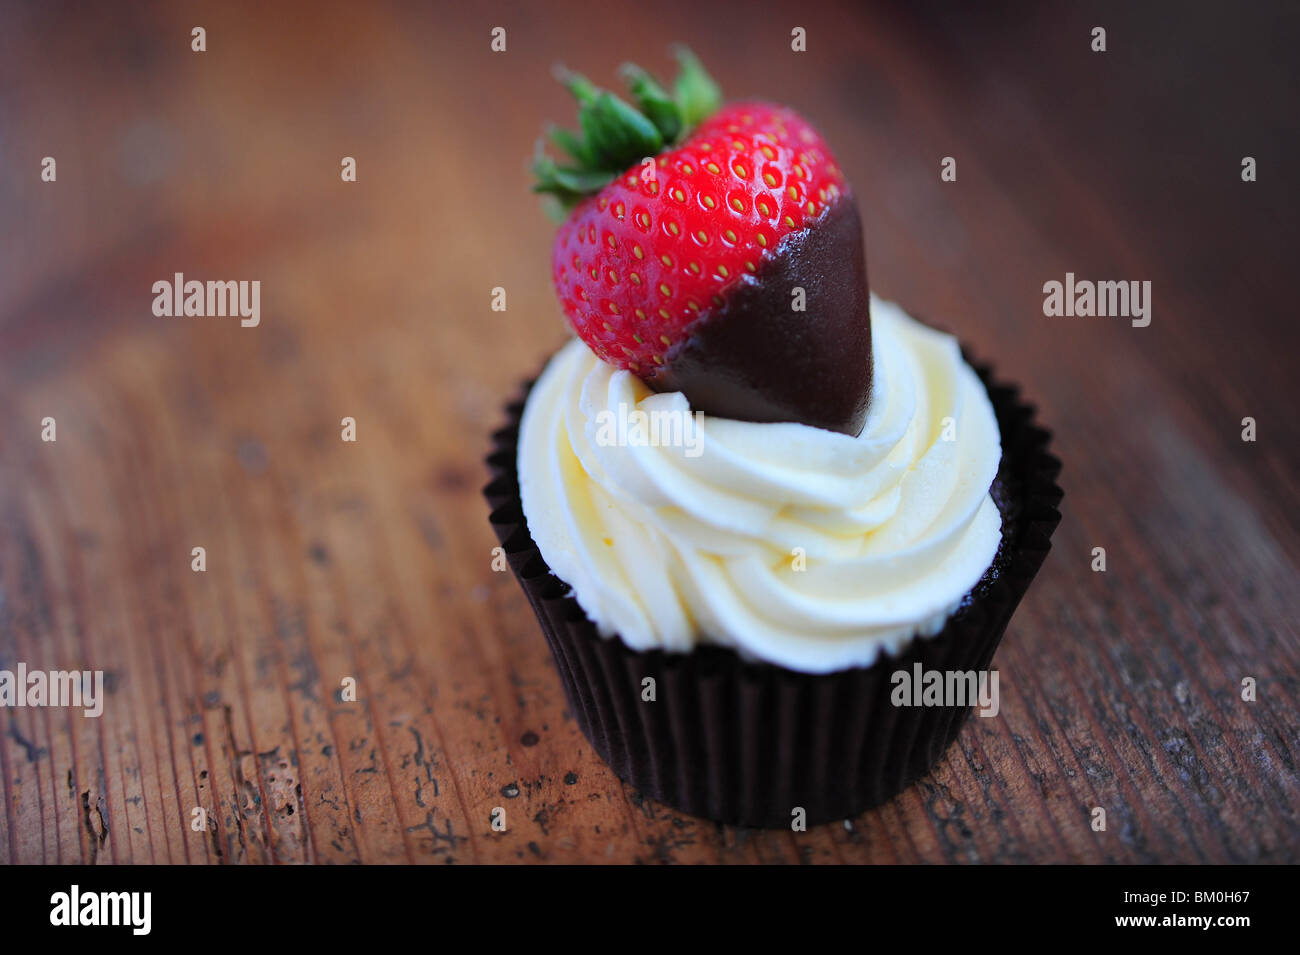 Un cupcake hechas de esponja de Chocolate, coronado con crema y una fresa Foto de stock